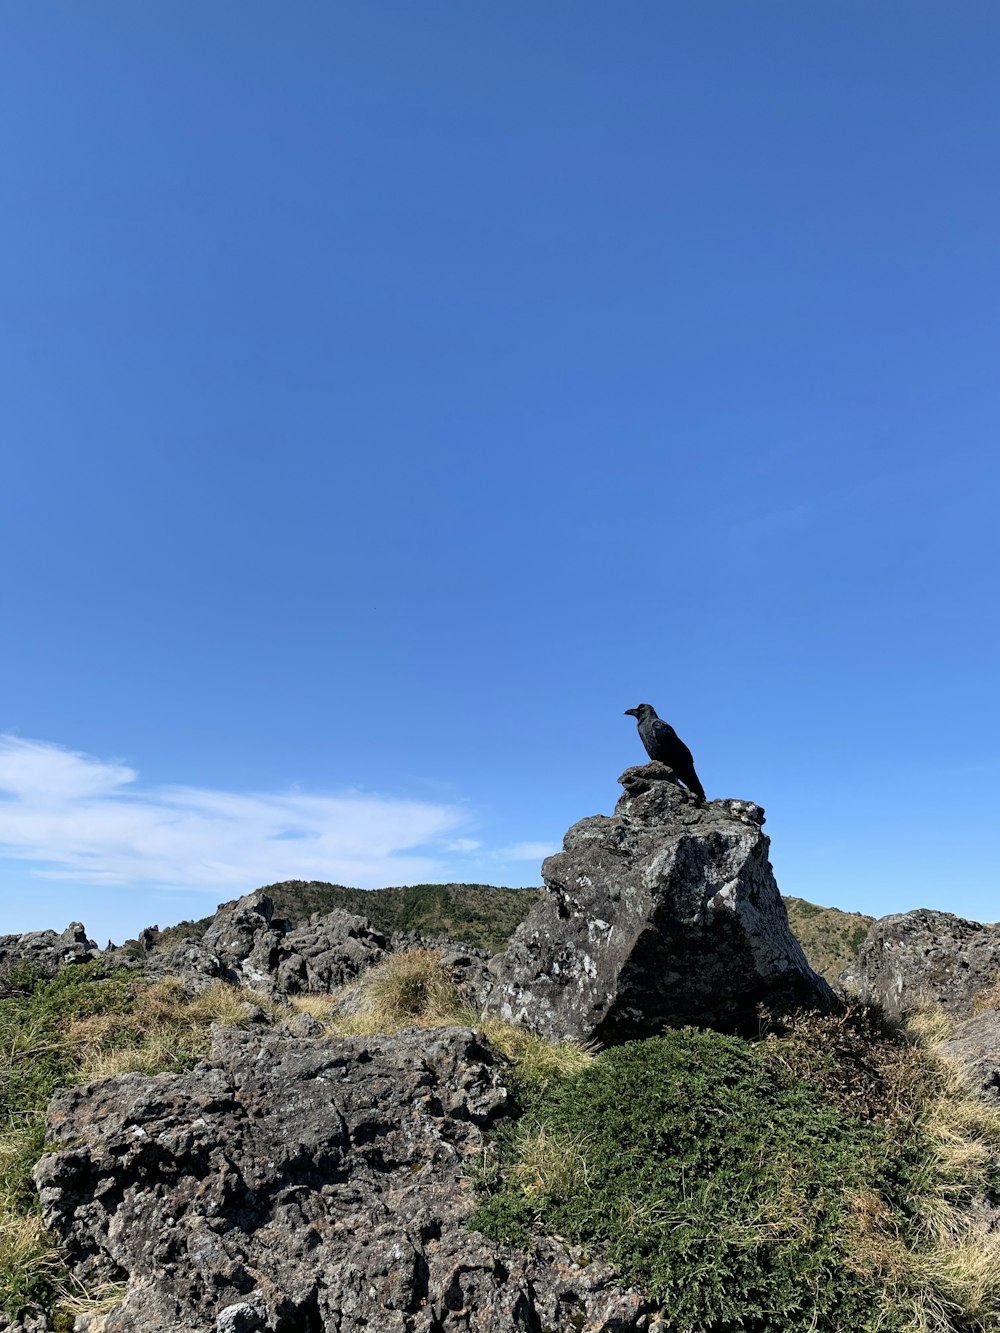 oiseau noir sur la formation rocheuse grise sous le ciel bleu pendant la journée